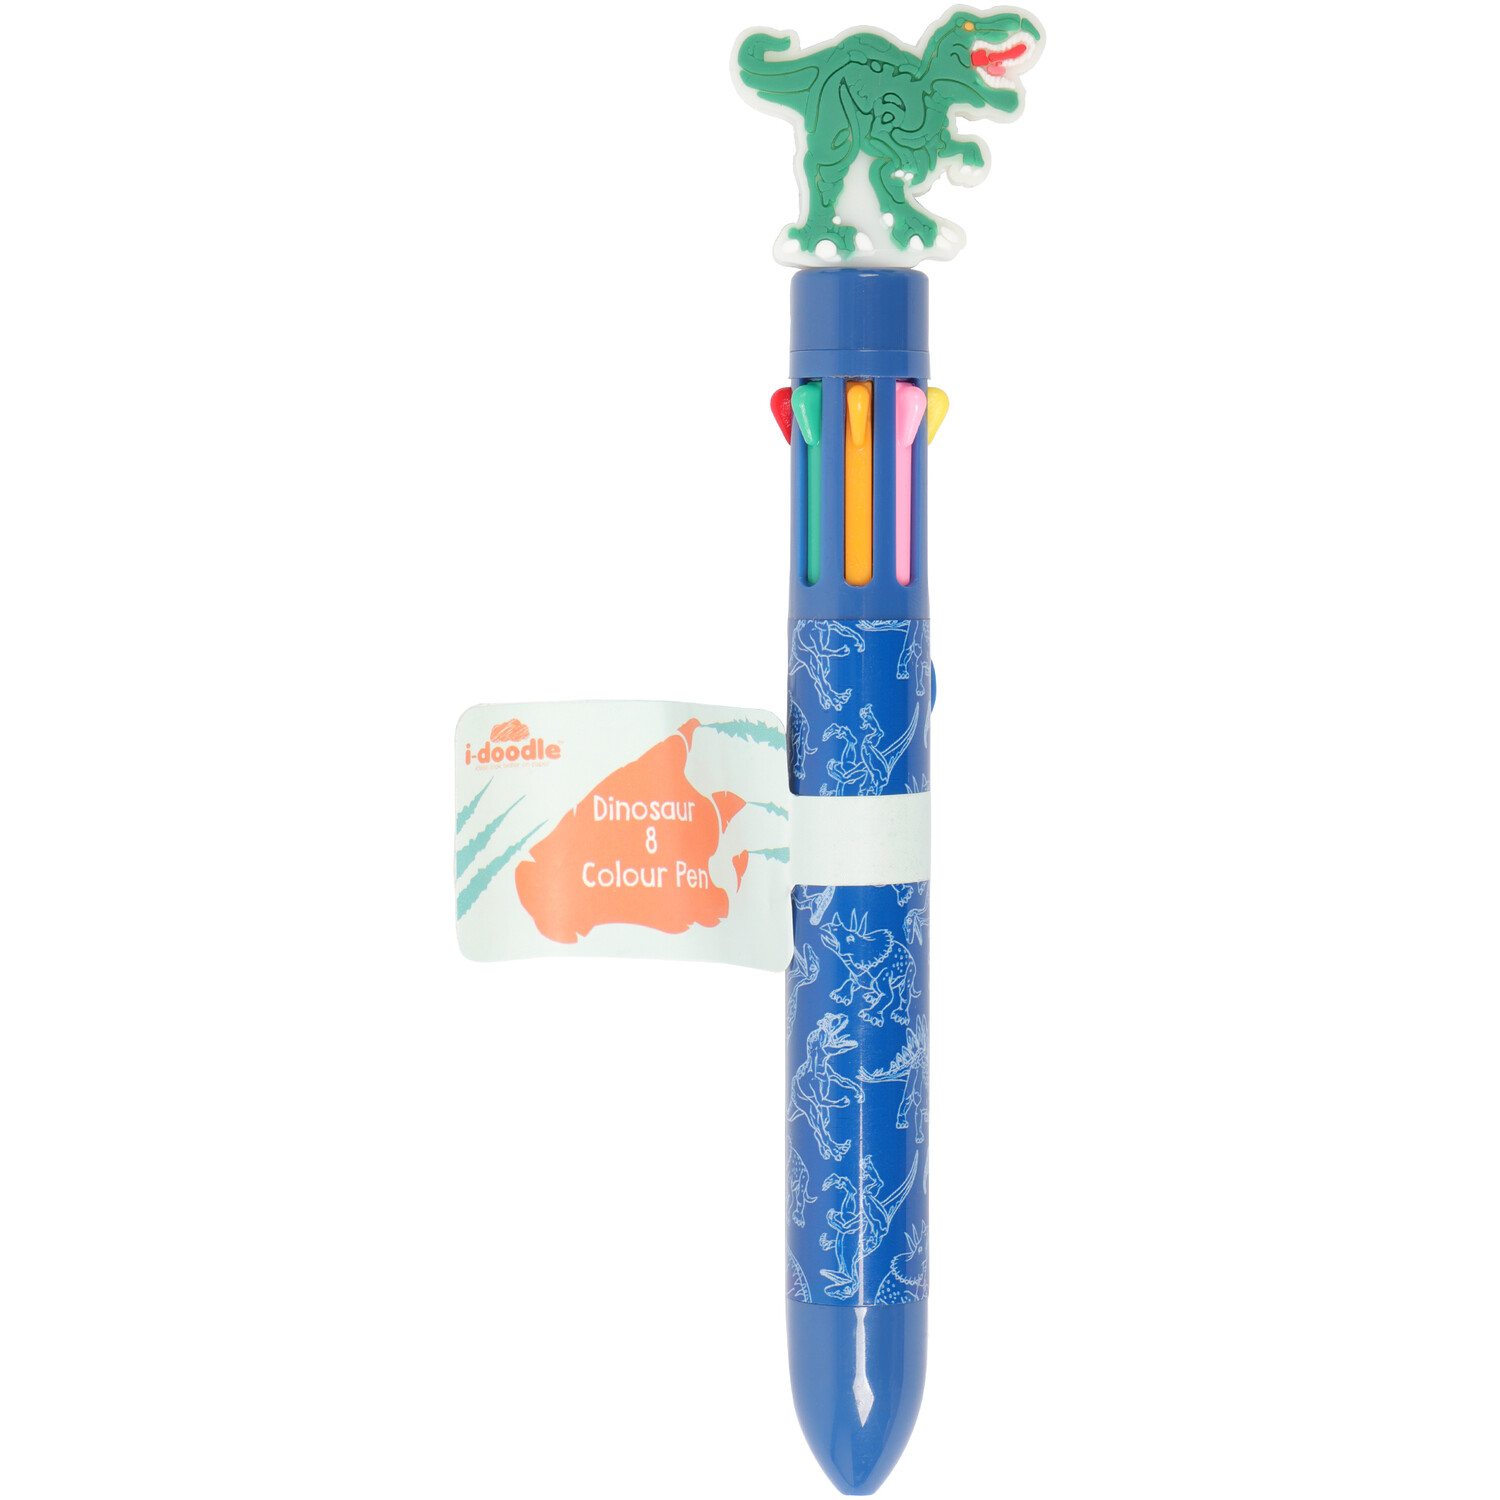 Dinosaur 8 Colour Pen Image 2